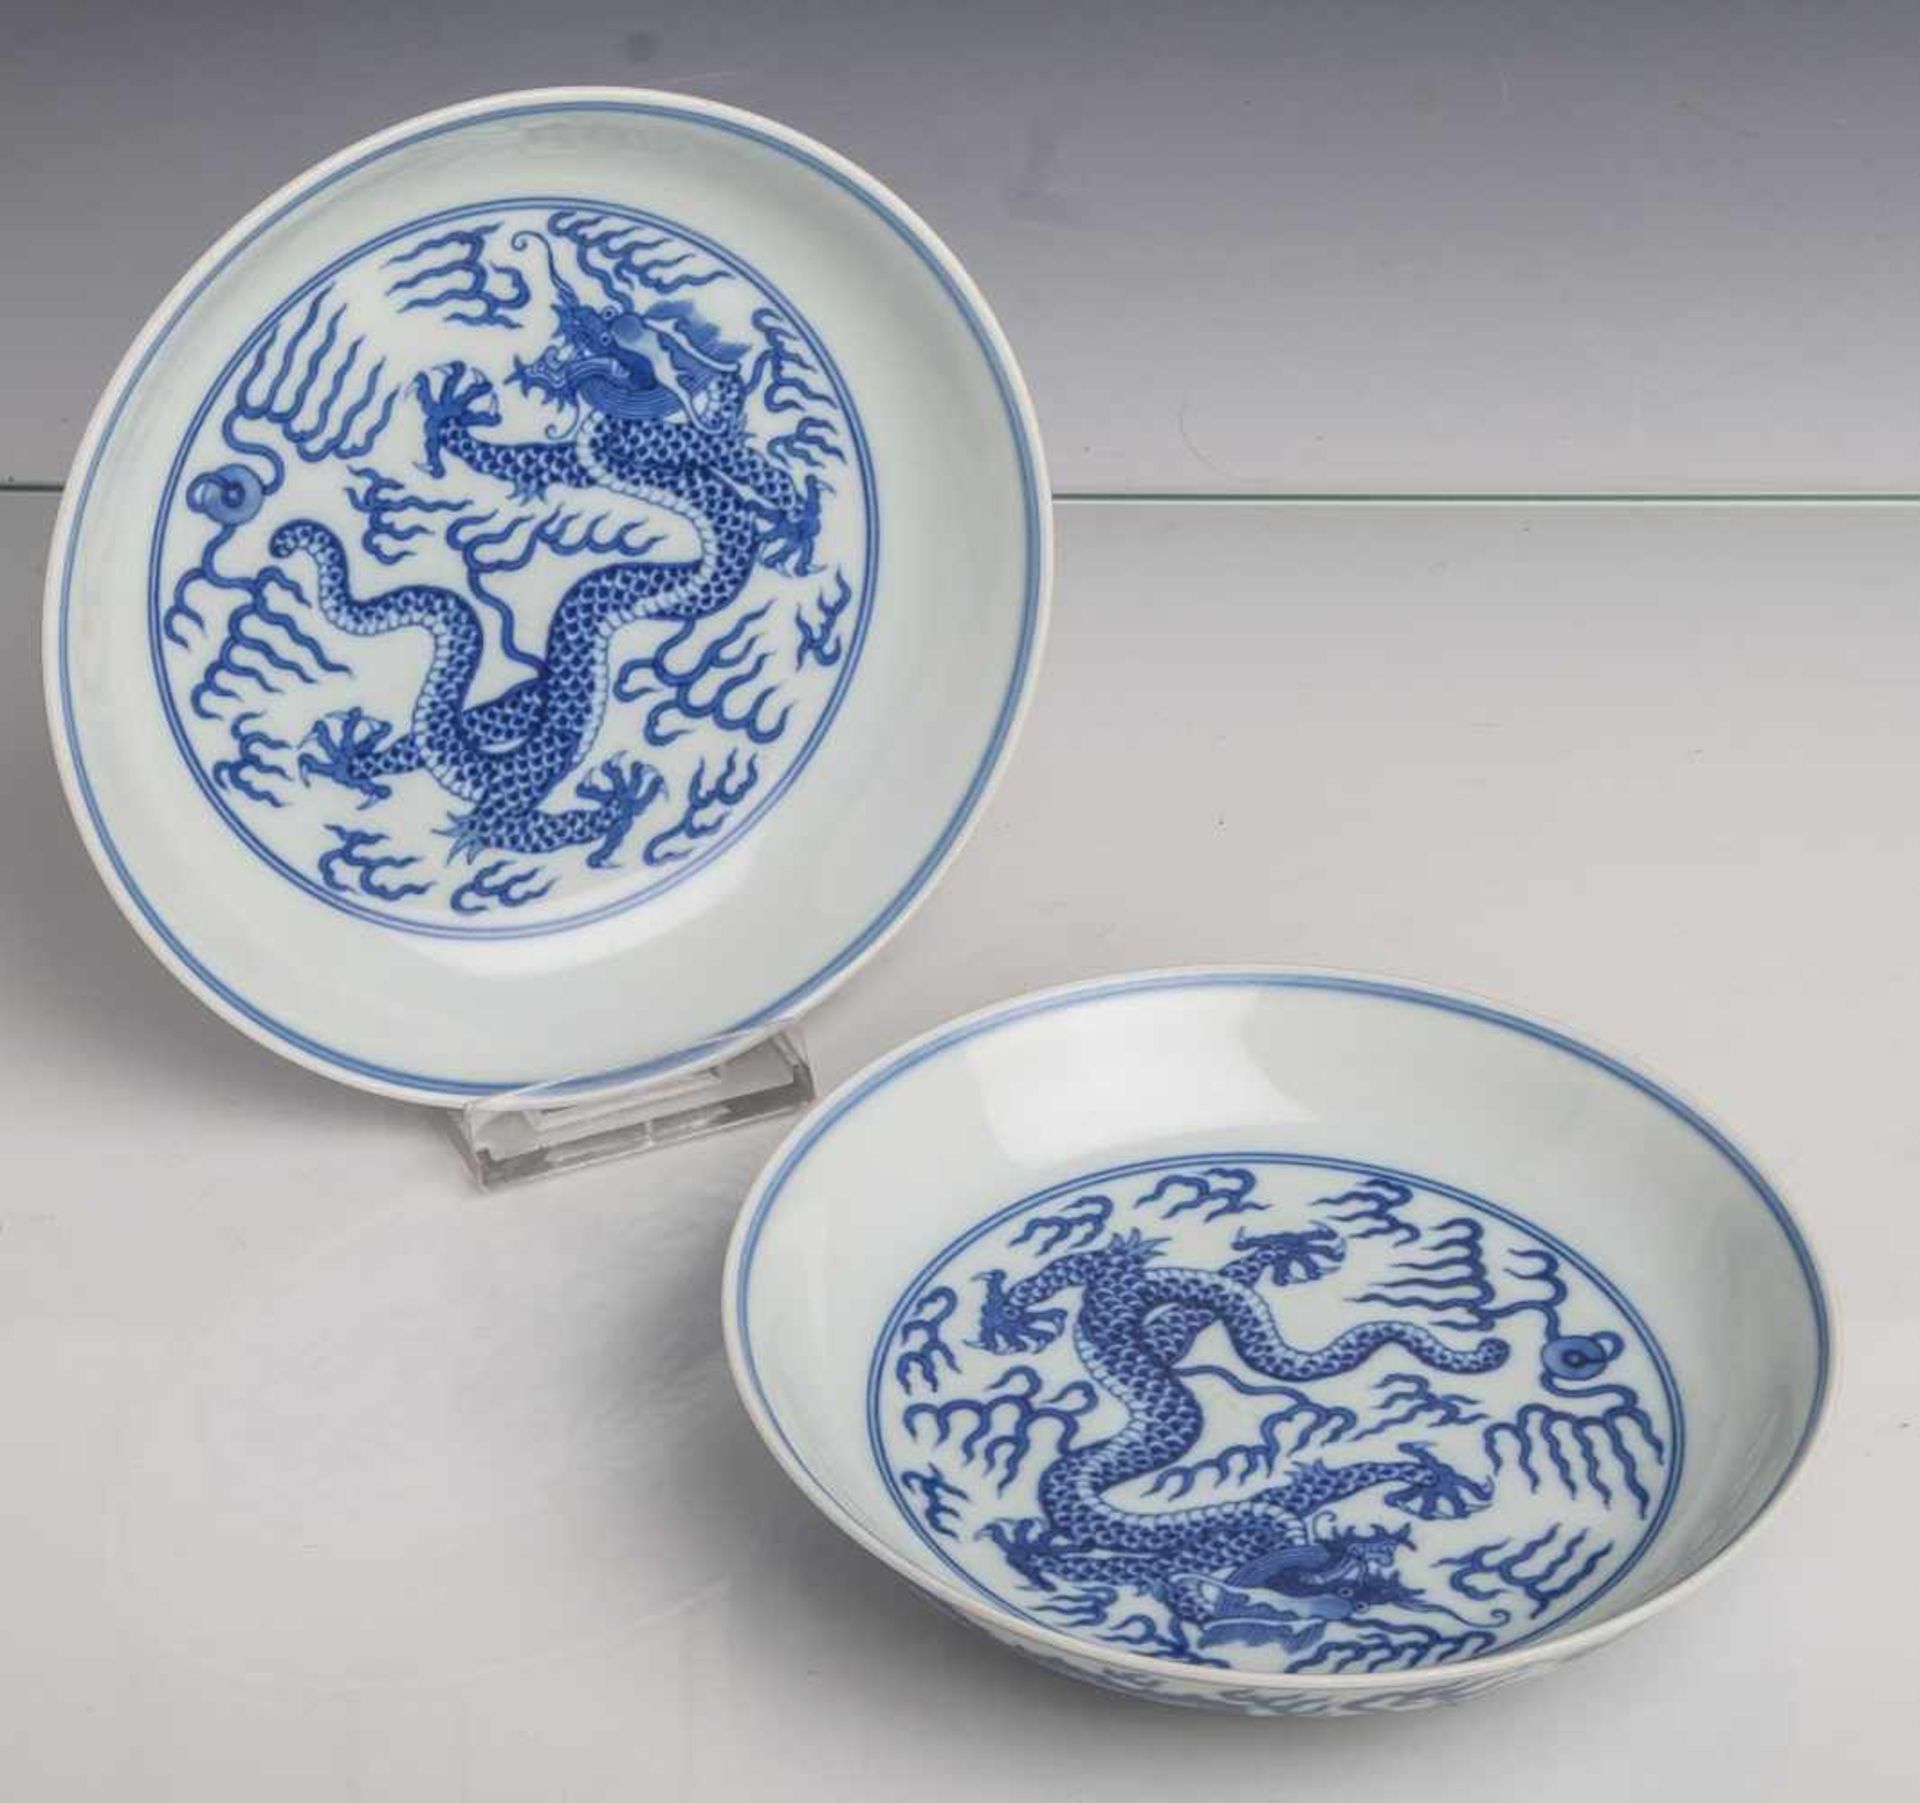 Paar Teller, China, Mitte 19. Jahrhundert, Blau-Weiß-Porzellan, mit Drachendekor. Die Us.m. blauer